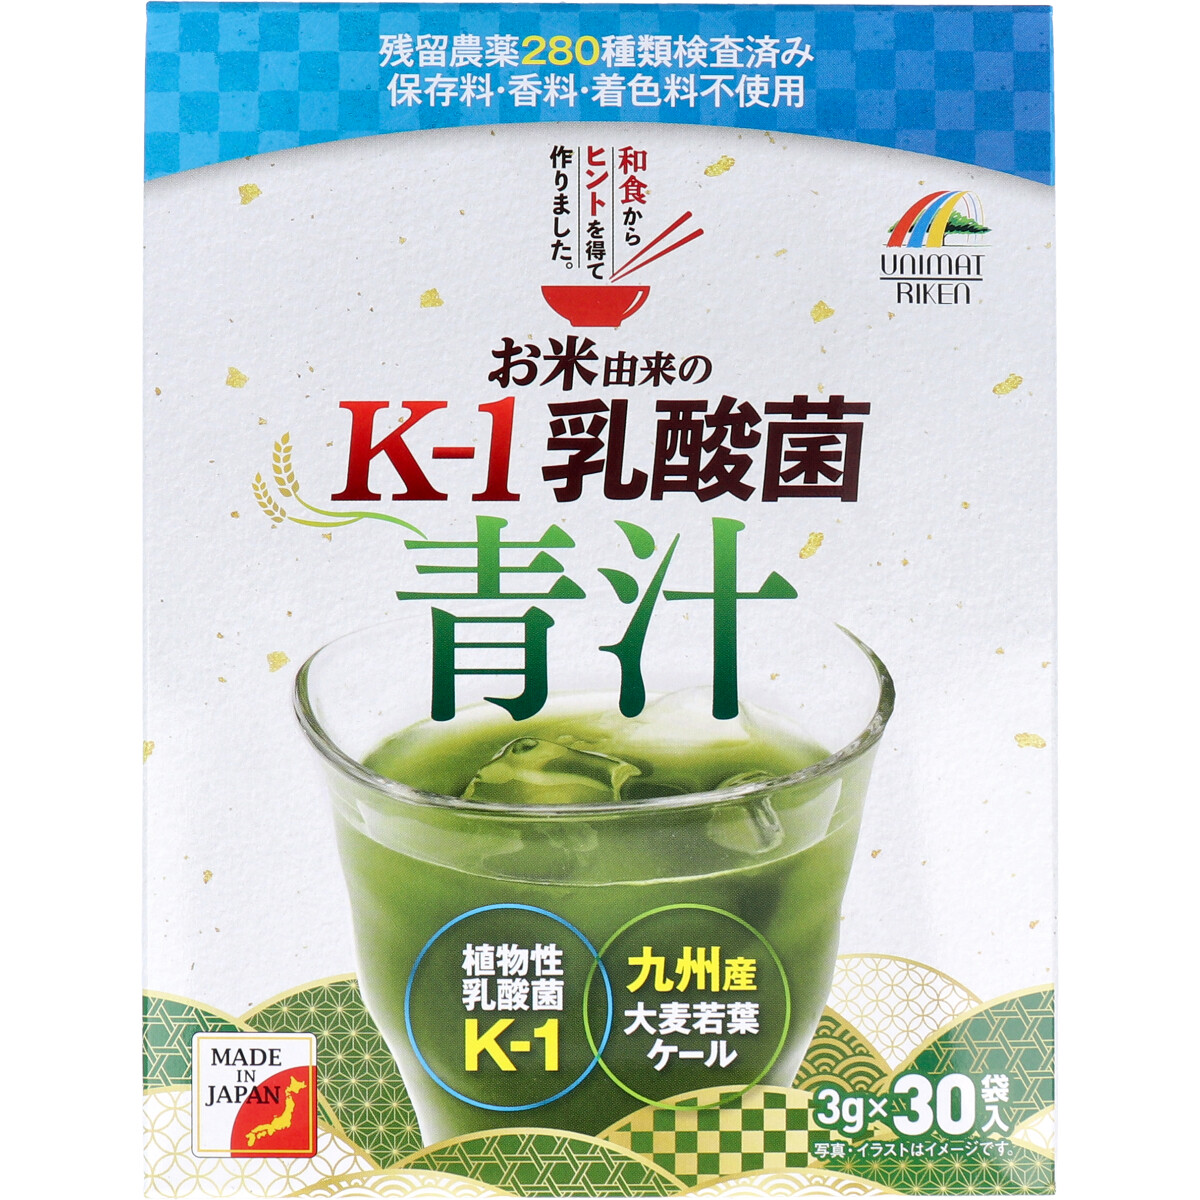 ※[廃盤]お米由来の K-1乳酸菌 青汁 3g×30袋入